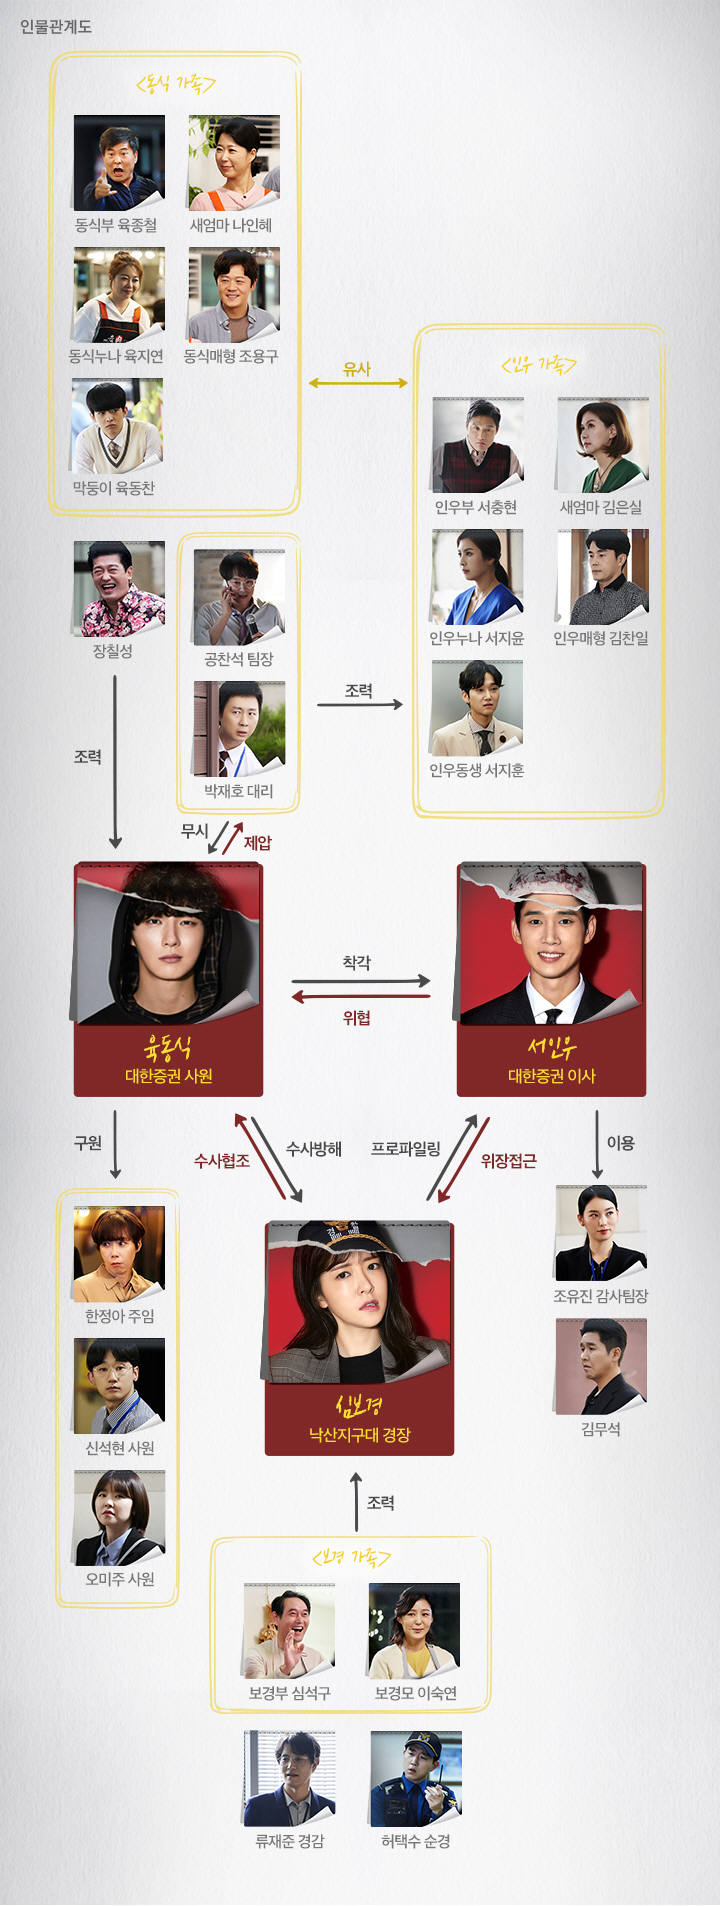 tvN 드라마 ‘싸이코패스 다이어리’ 인물관계도(출처: 공식홈페이지)